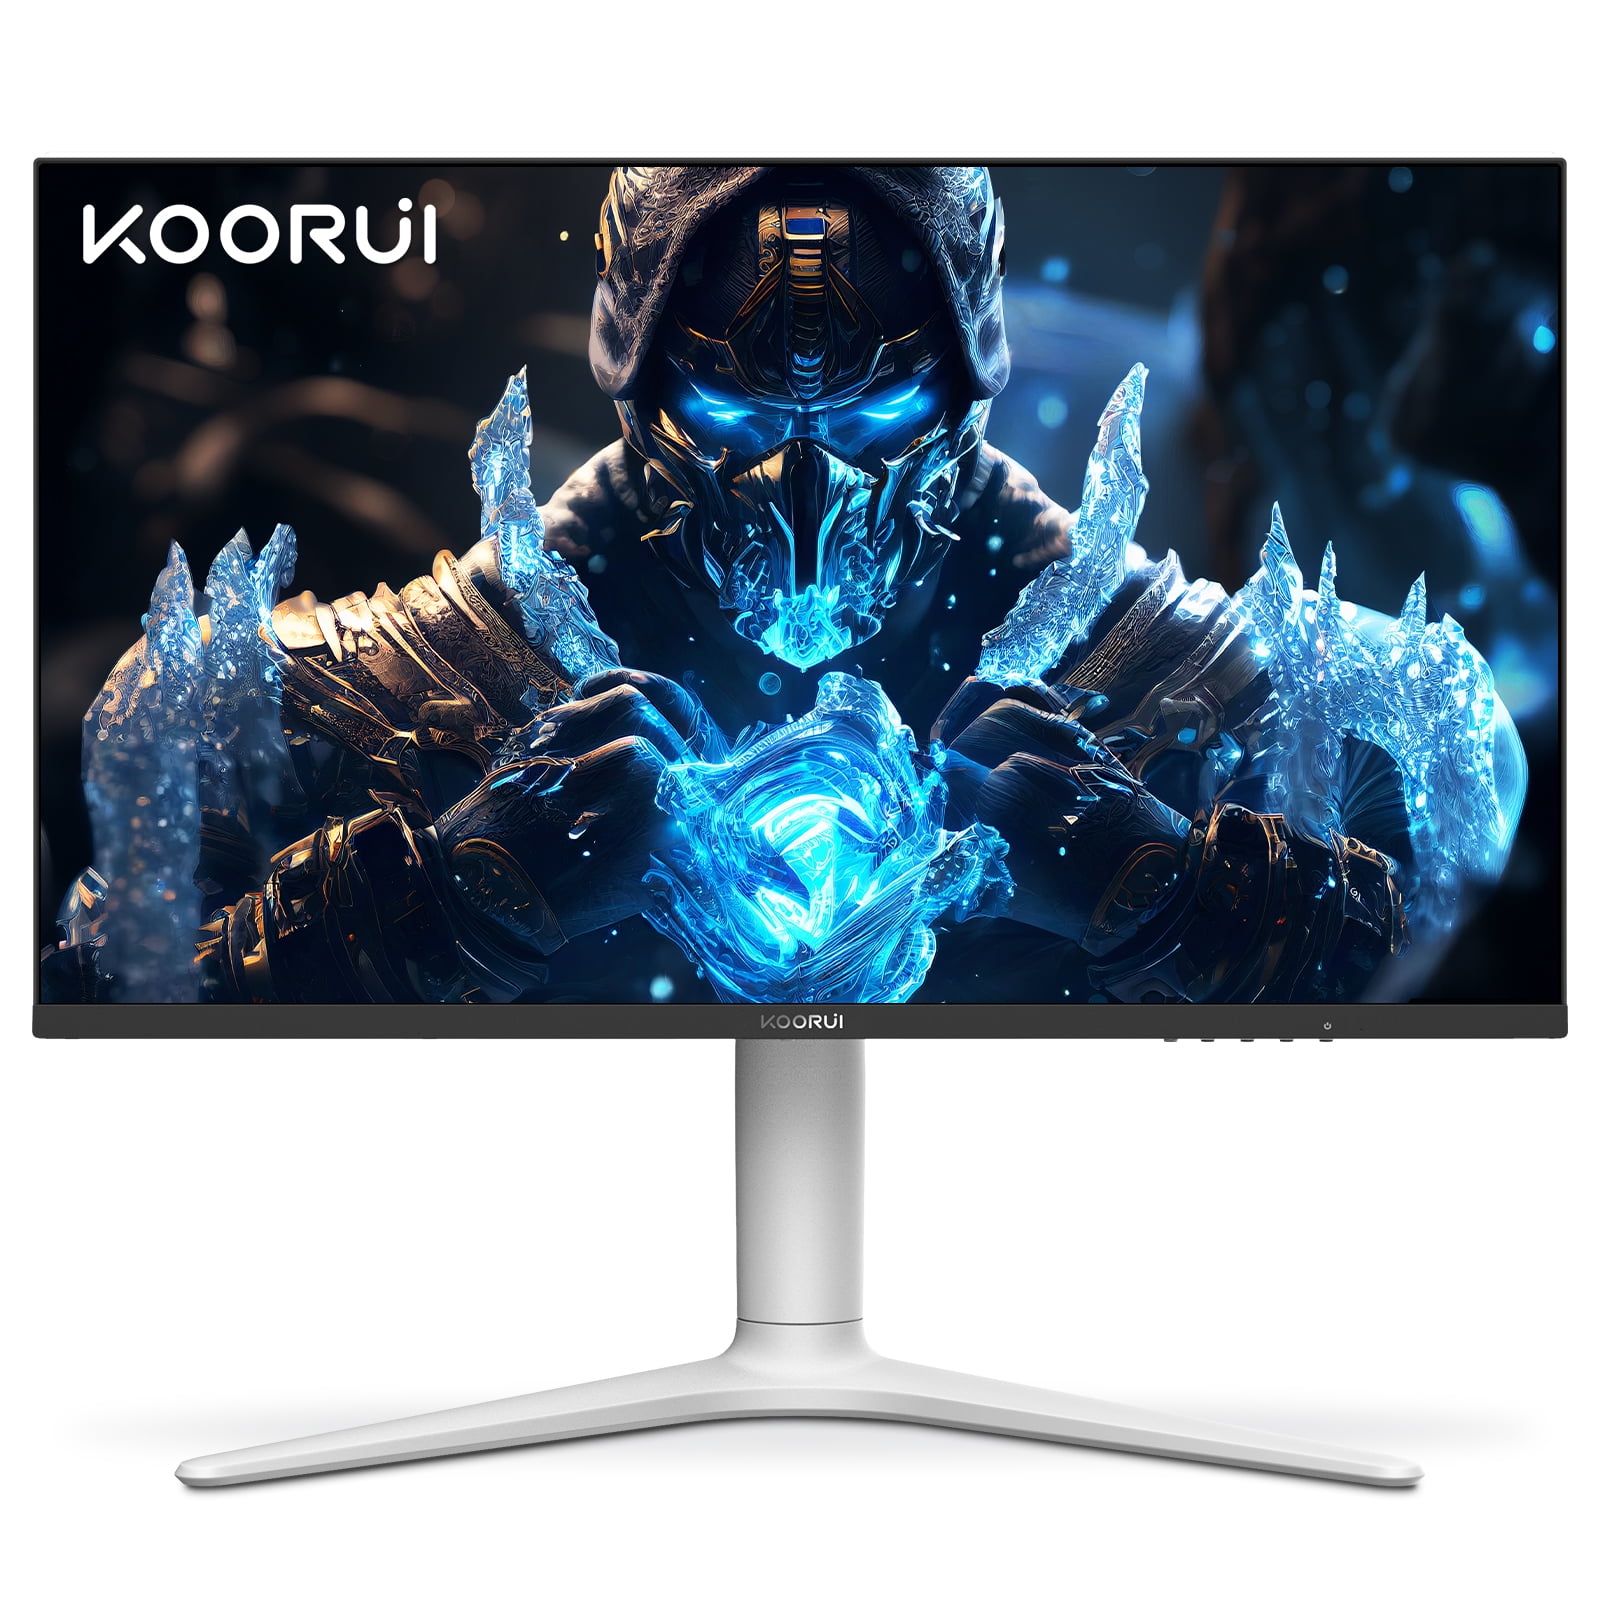 KOORUI 27” QHD 1440p Gaming Monitor Review (27E1QA) 